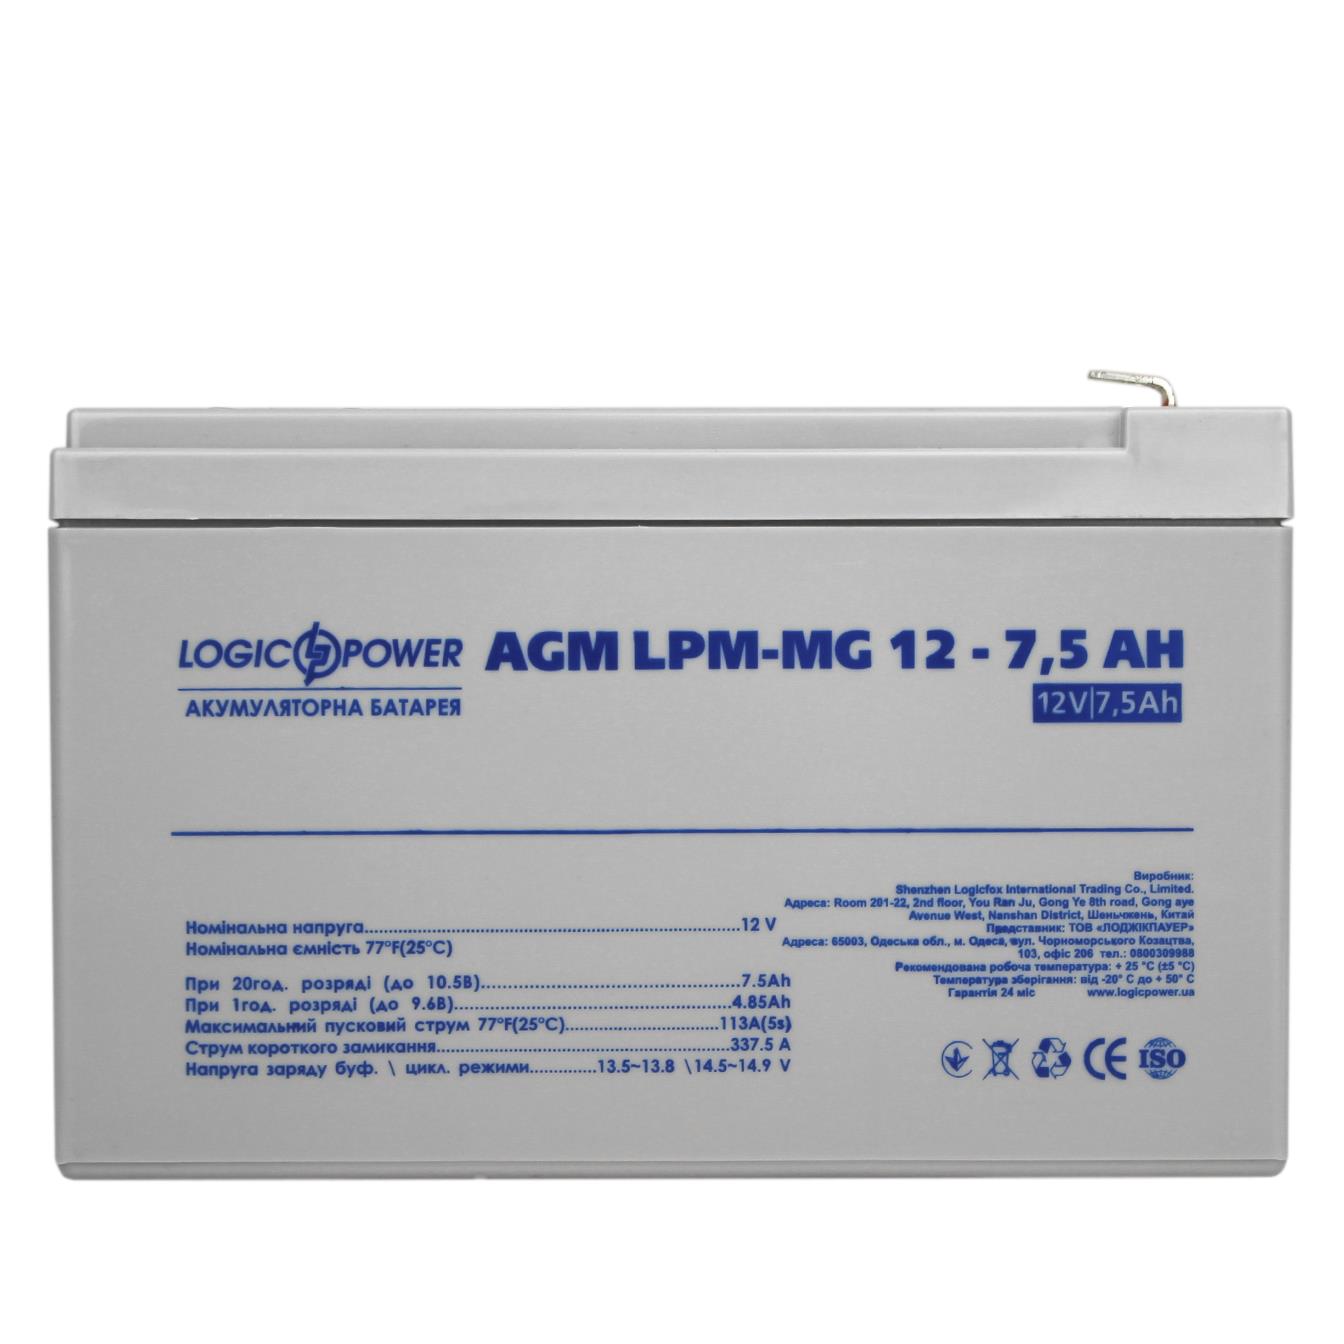 продаём LogicPower LPM-MG 12V - 7.5 Ah (6554) в Украине - фото 4